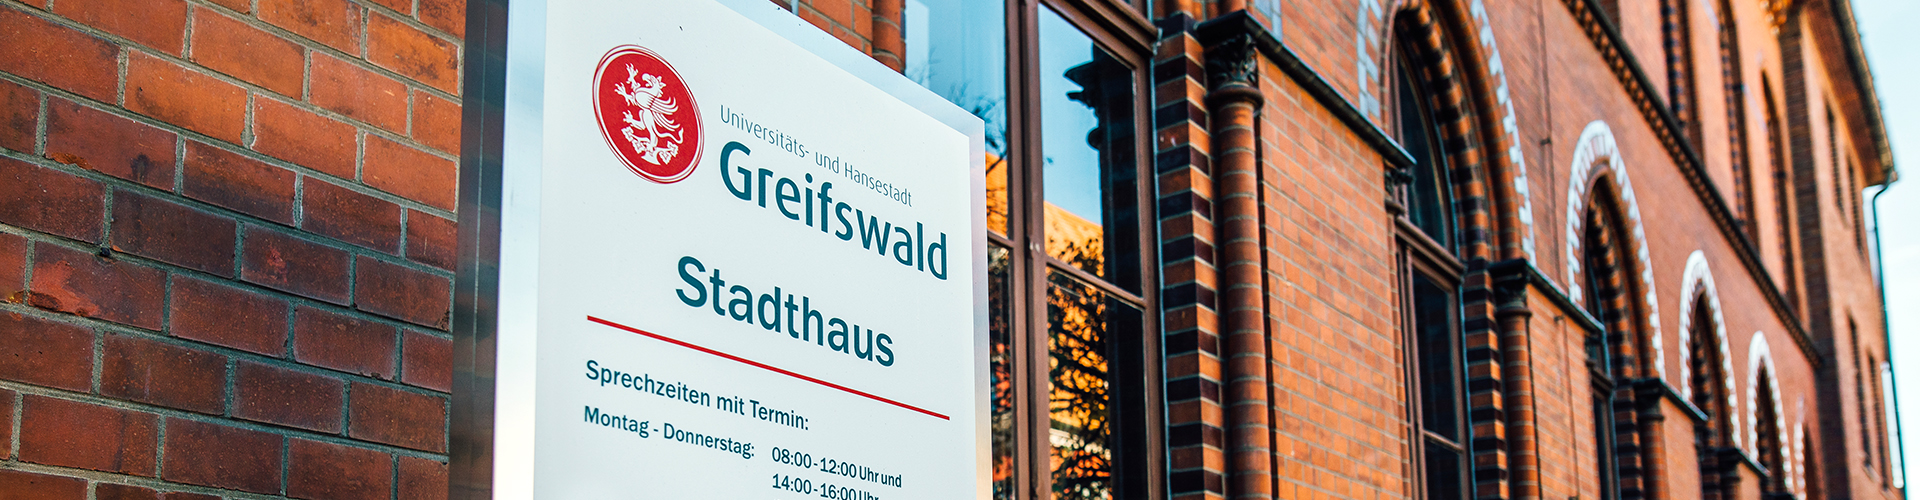 Schild mit Kontakten und Öffnungszeiten des Stadthauses Greifswald